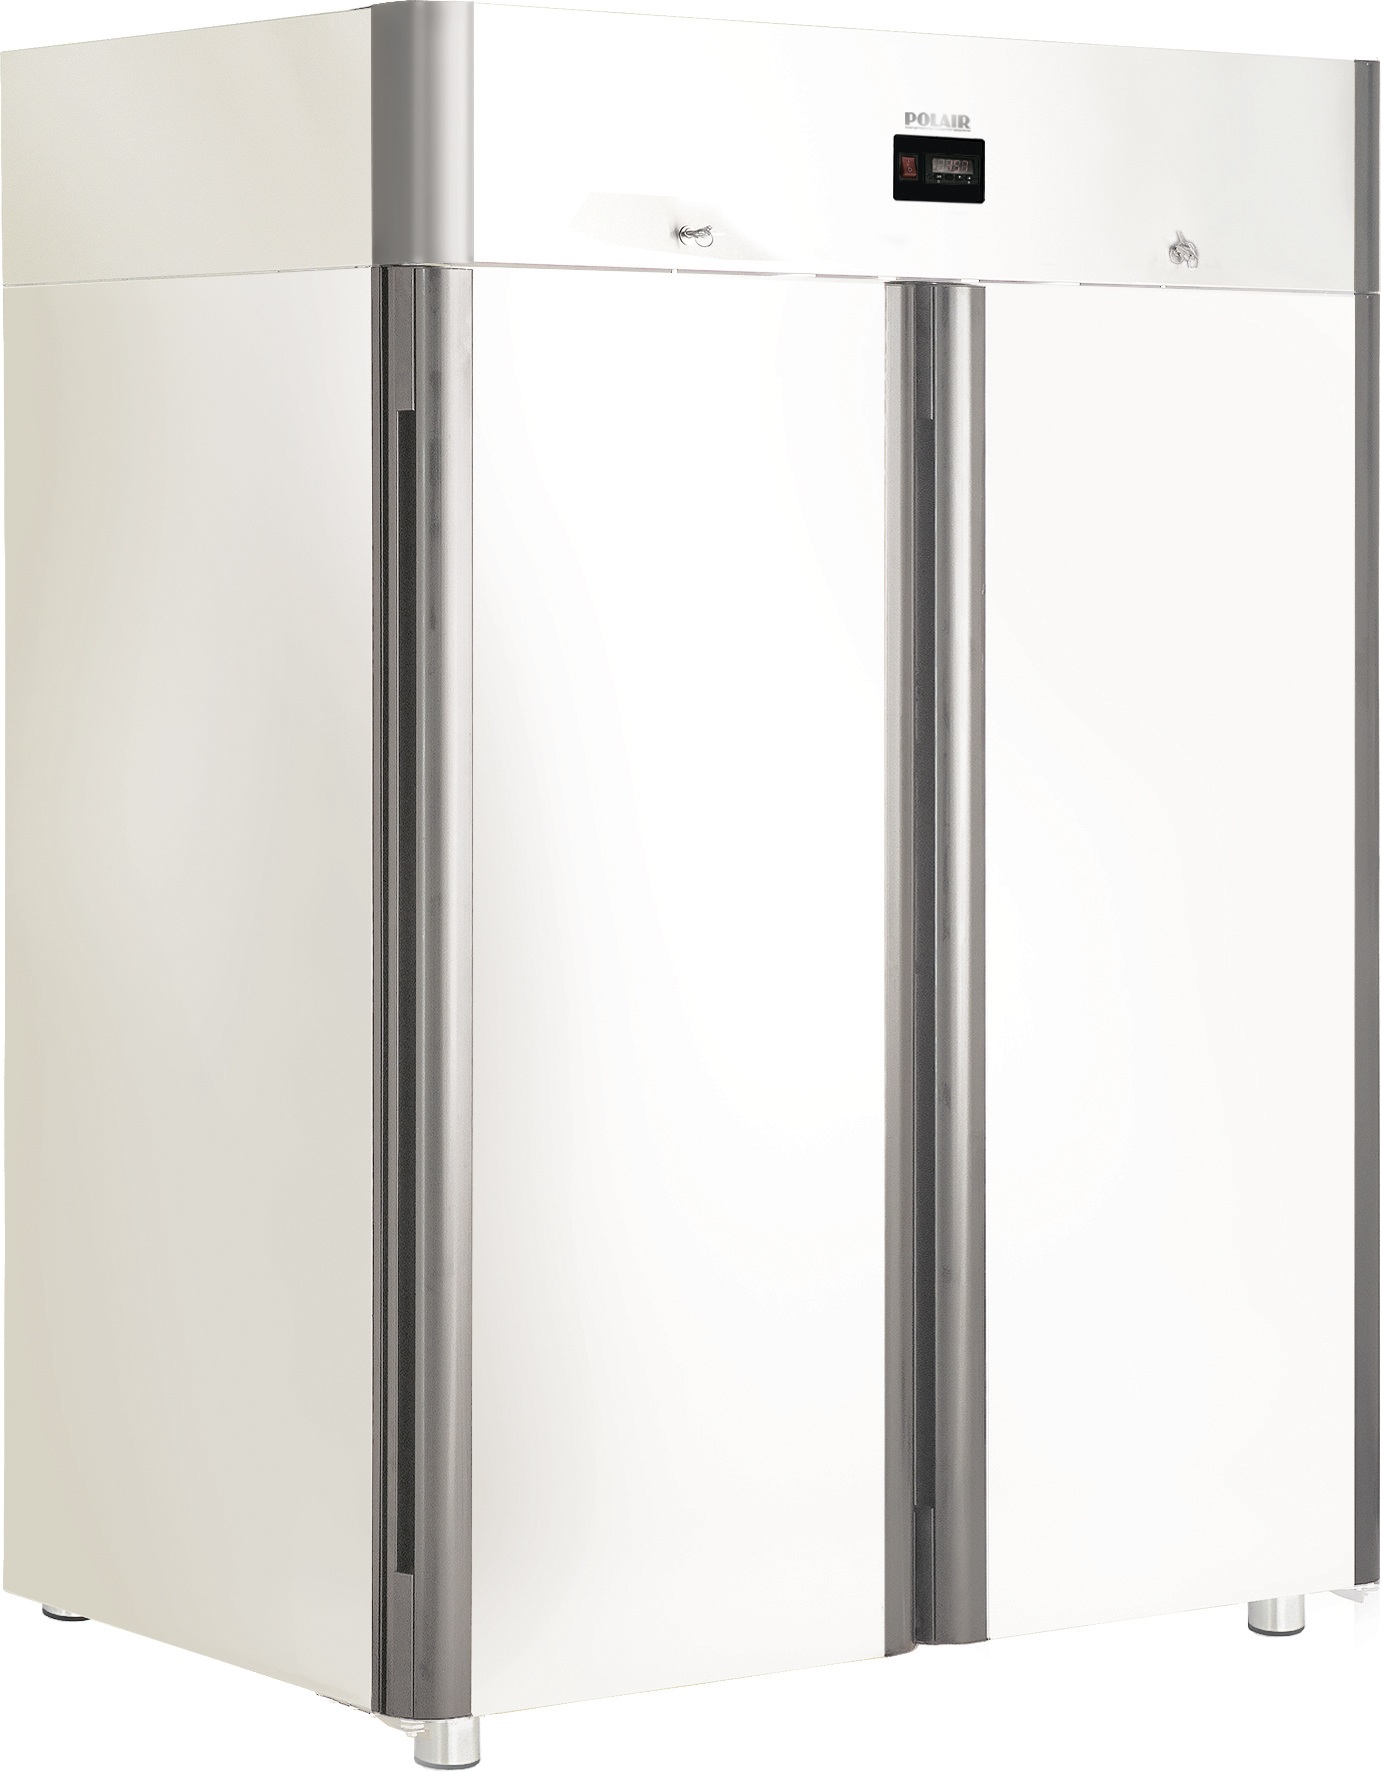 Холодильный шкаф POLAIR Standard CV114-Sm Alu